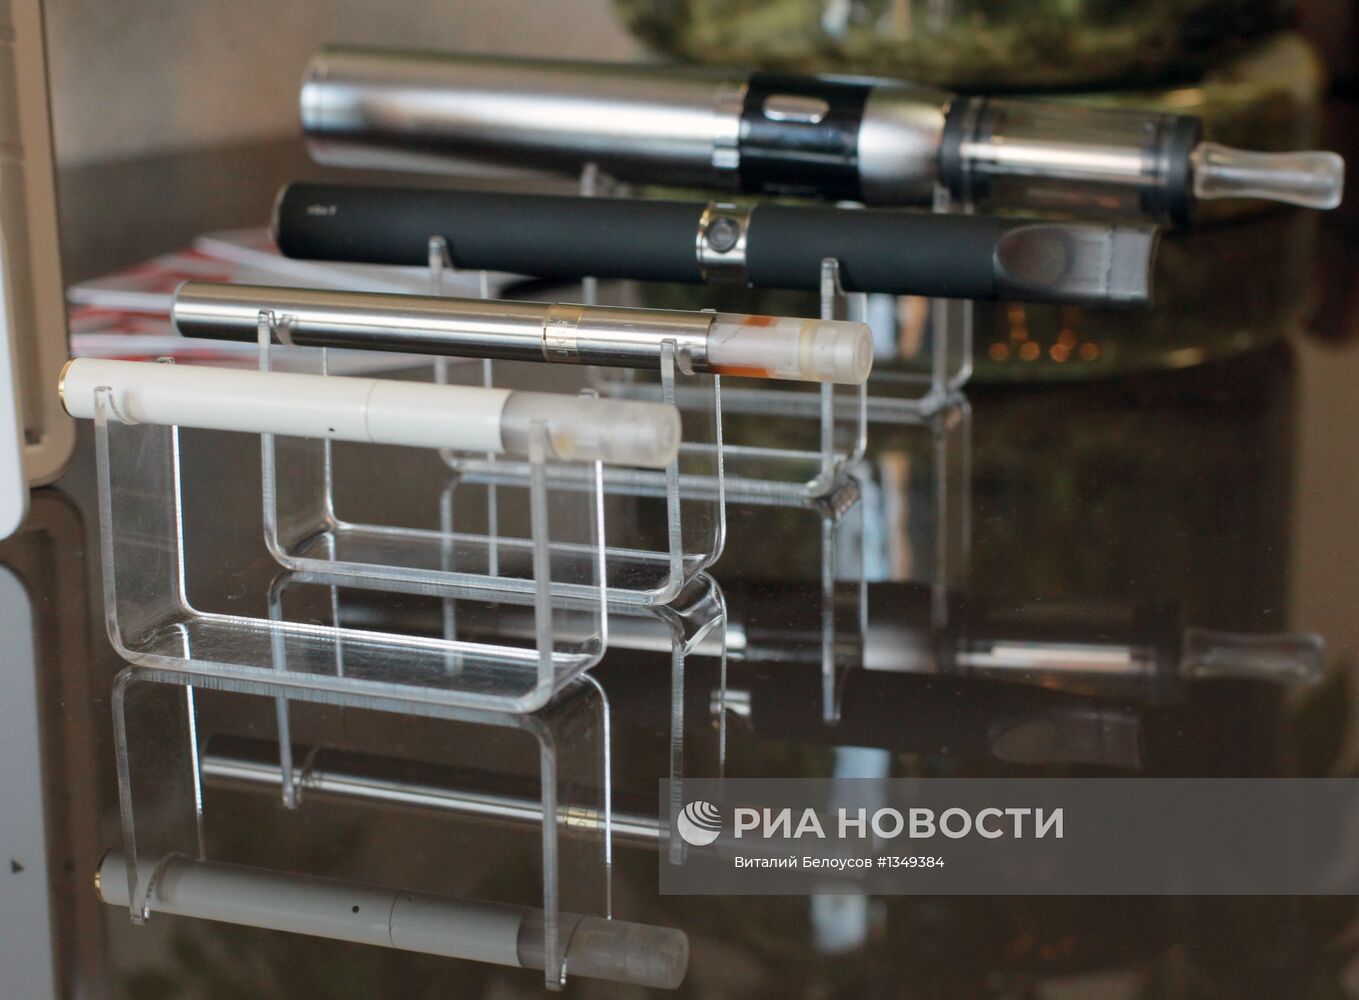 Продажа электронных сигарет в Москве